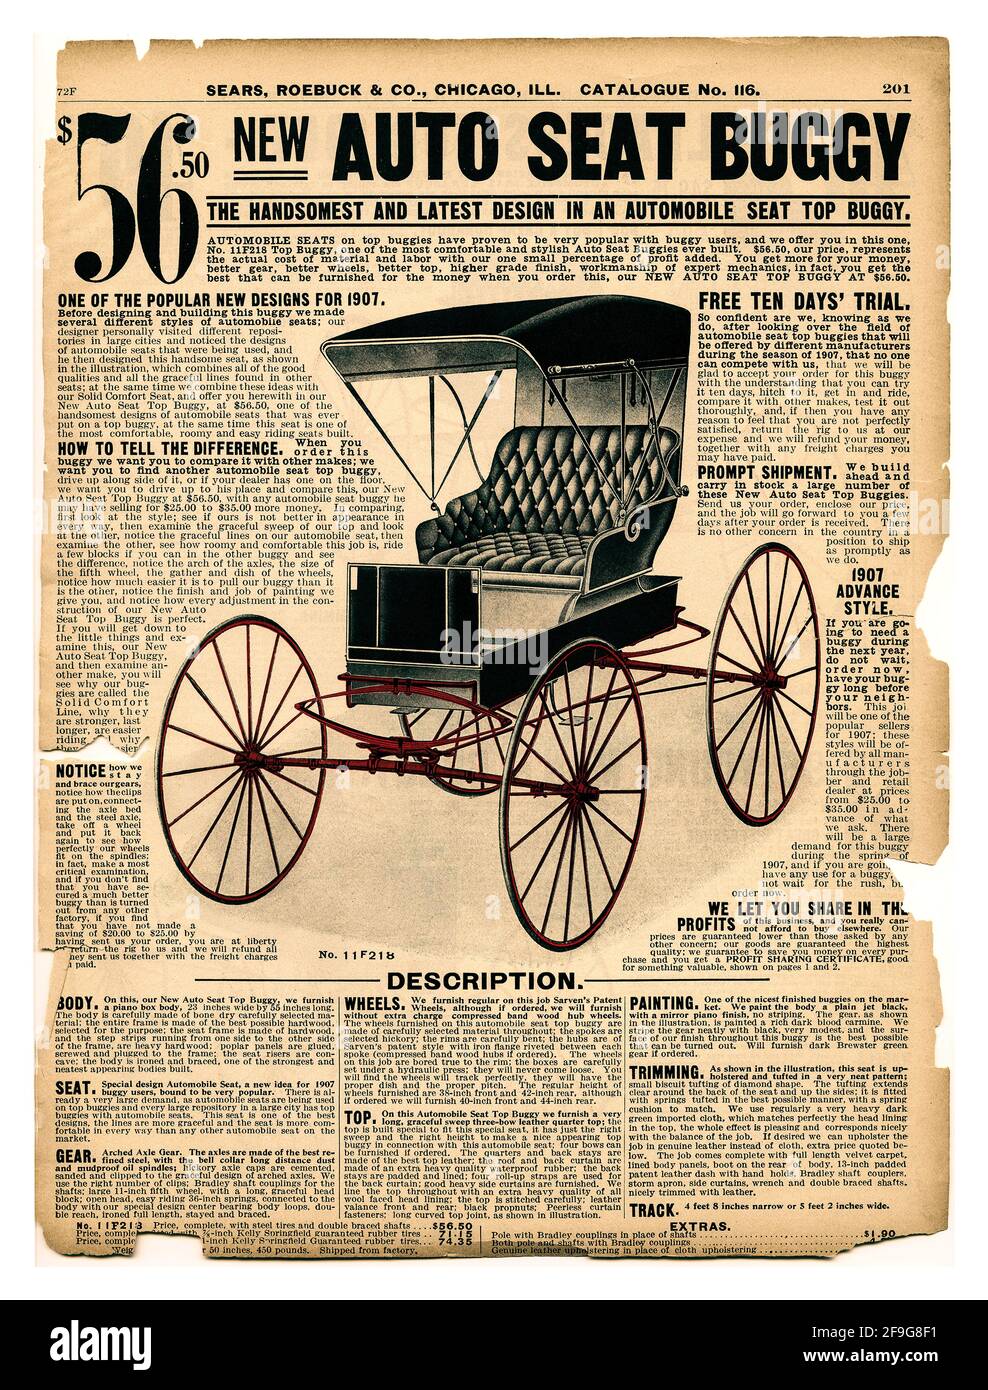 Vintage trasporto auto sedile top buggy 1907 Sears, Roebuck & Co. Catalogo. Auto sedile buggy. L'annuncio include: Un'illustrazione del buggy, il prezzo, 56.50 dollari e una descrizione dettagliata. Il design più recente in un buggy superiore del sedile dell'automobile. Foto Stock